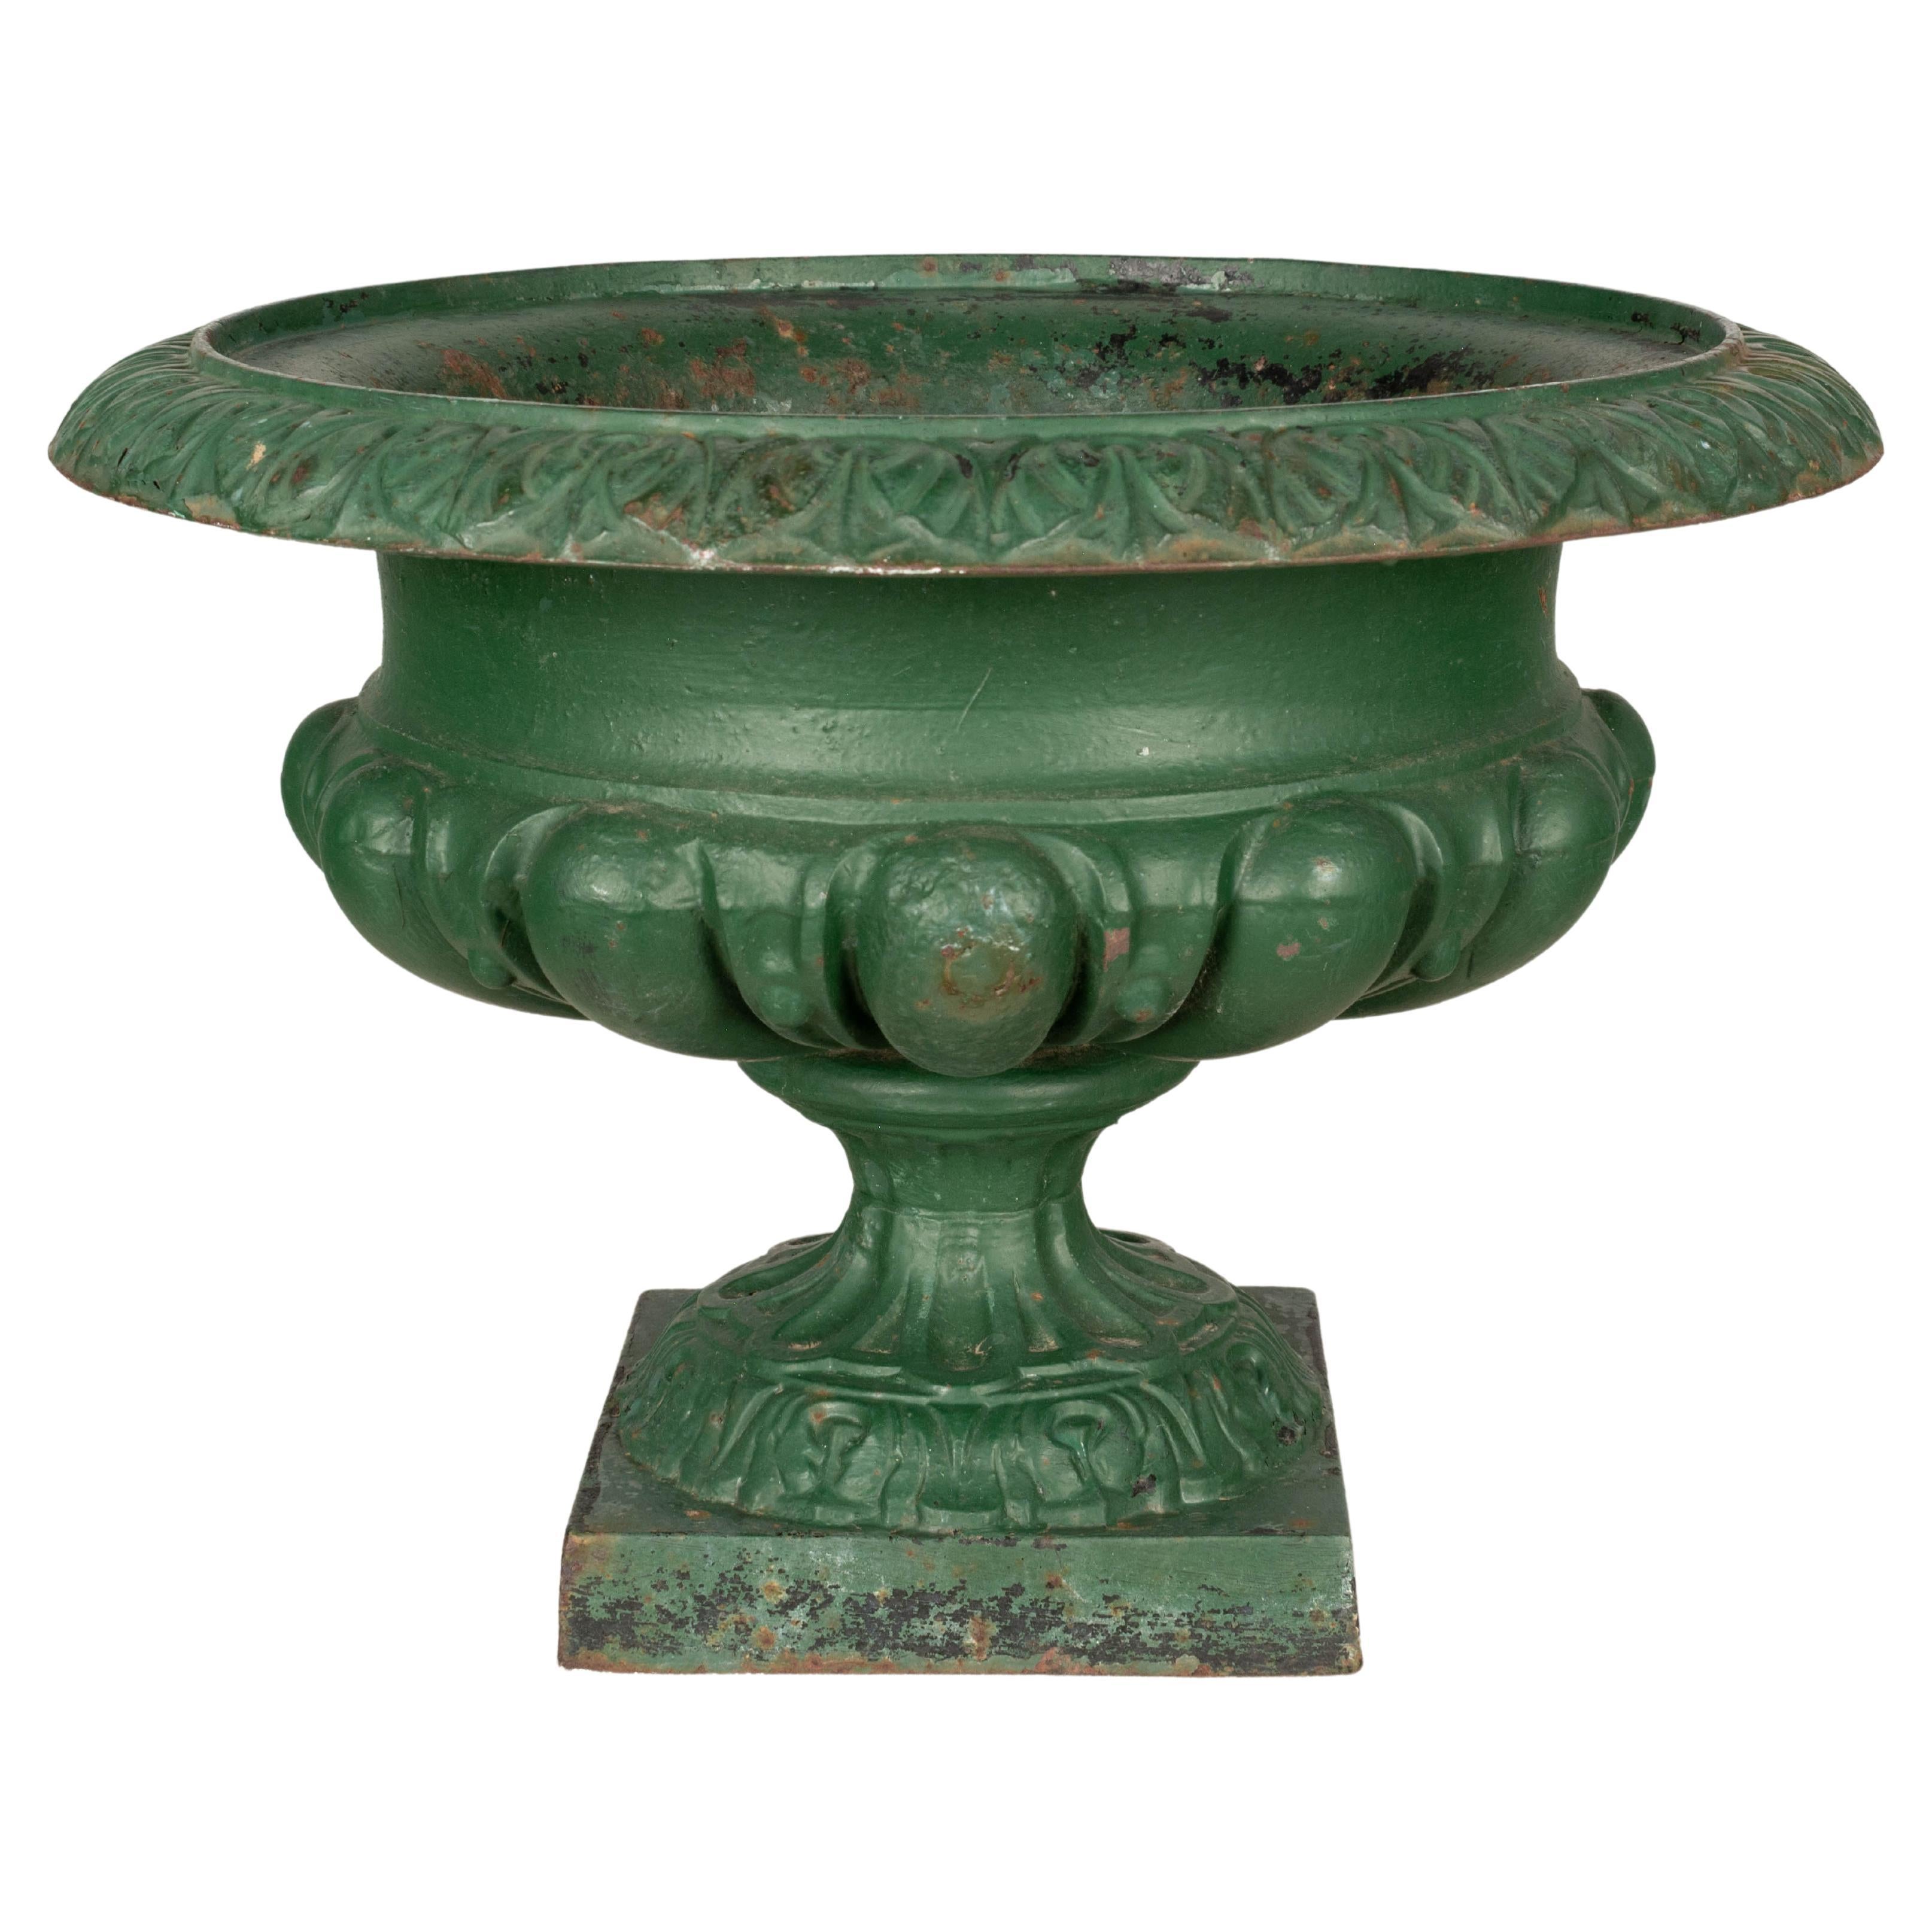 19th Century French Cast Iron Garden Urn